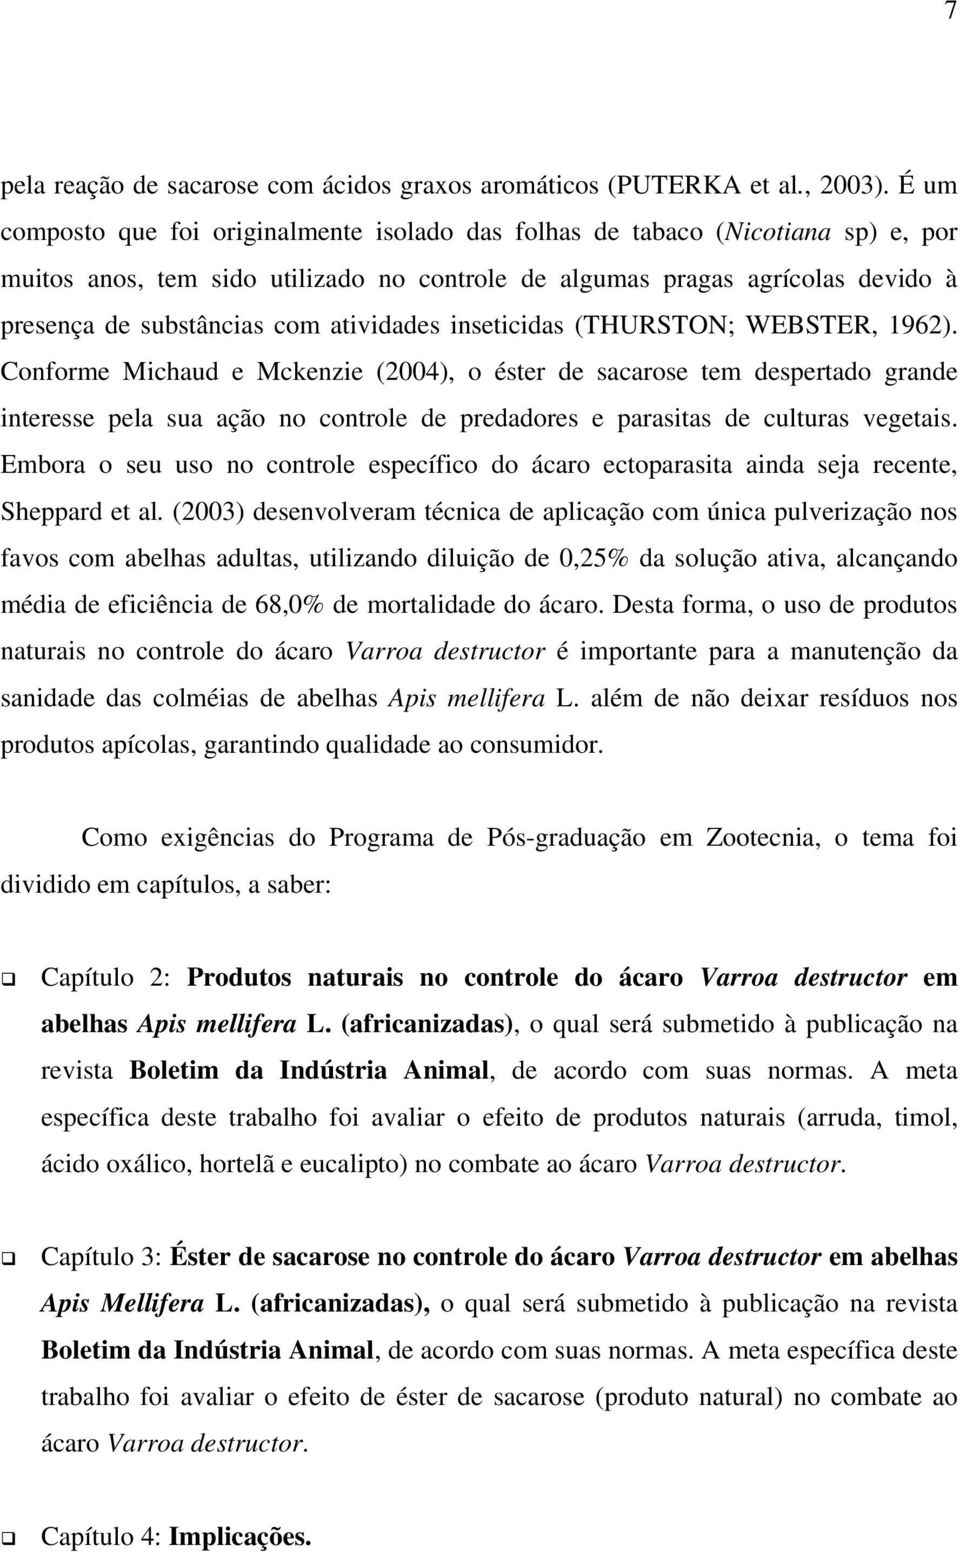 atividades inseticidas (THURSTON; WEBSTER, 1962).